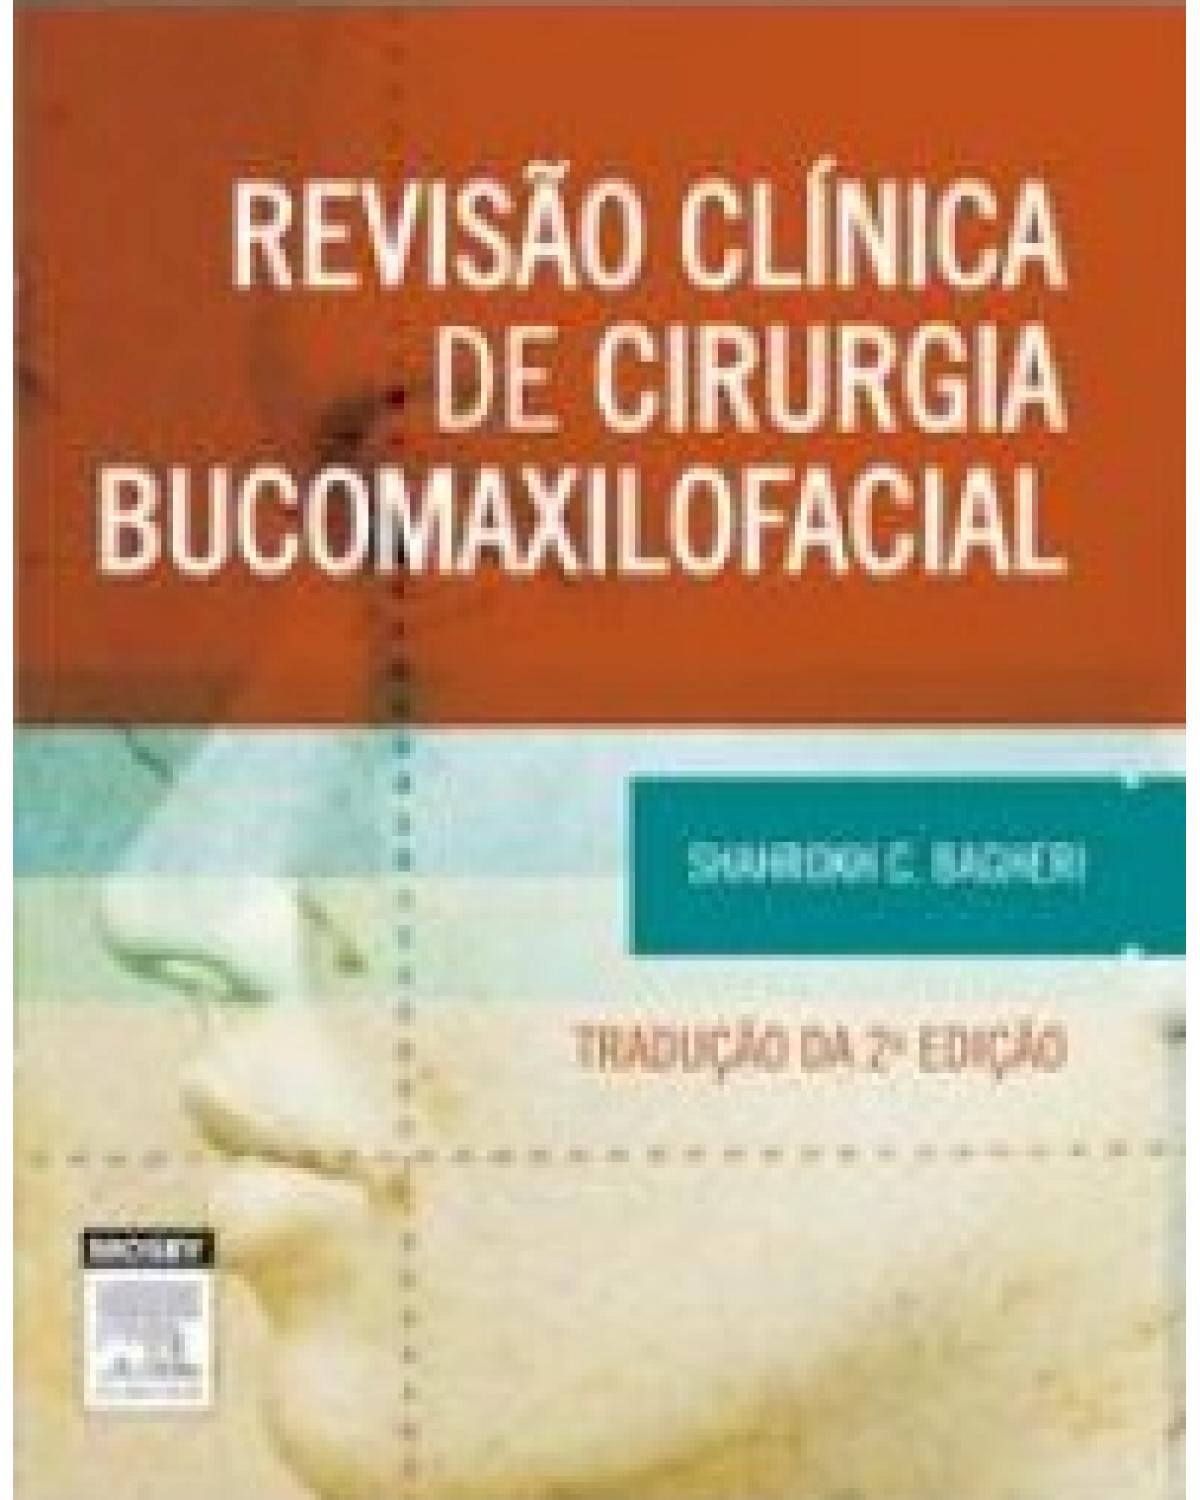 Revisão clínica de cirurgia bucomaxilofacial - 2ª Edição | 2015